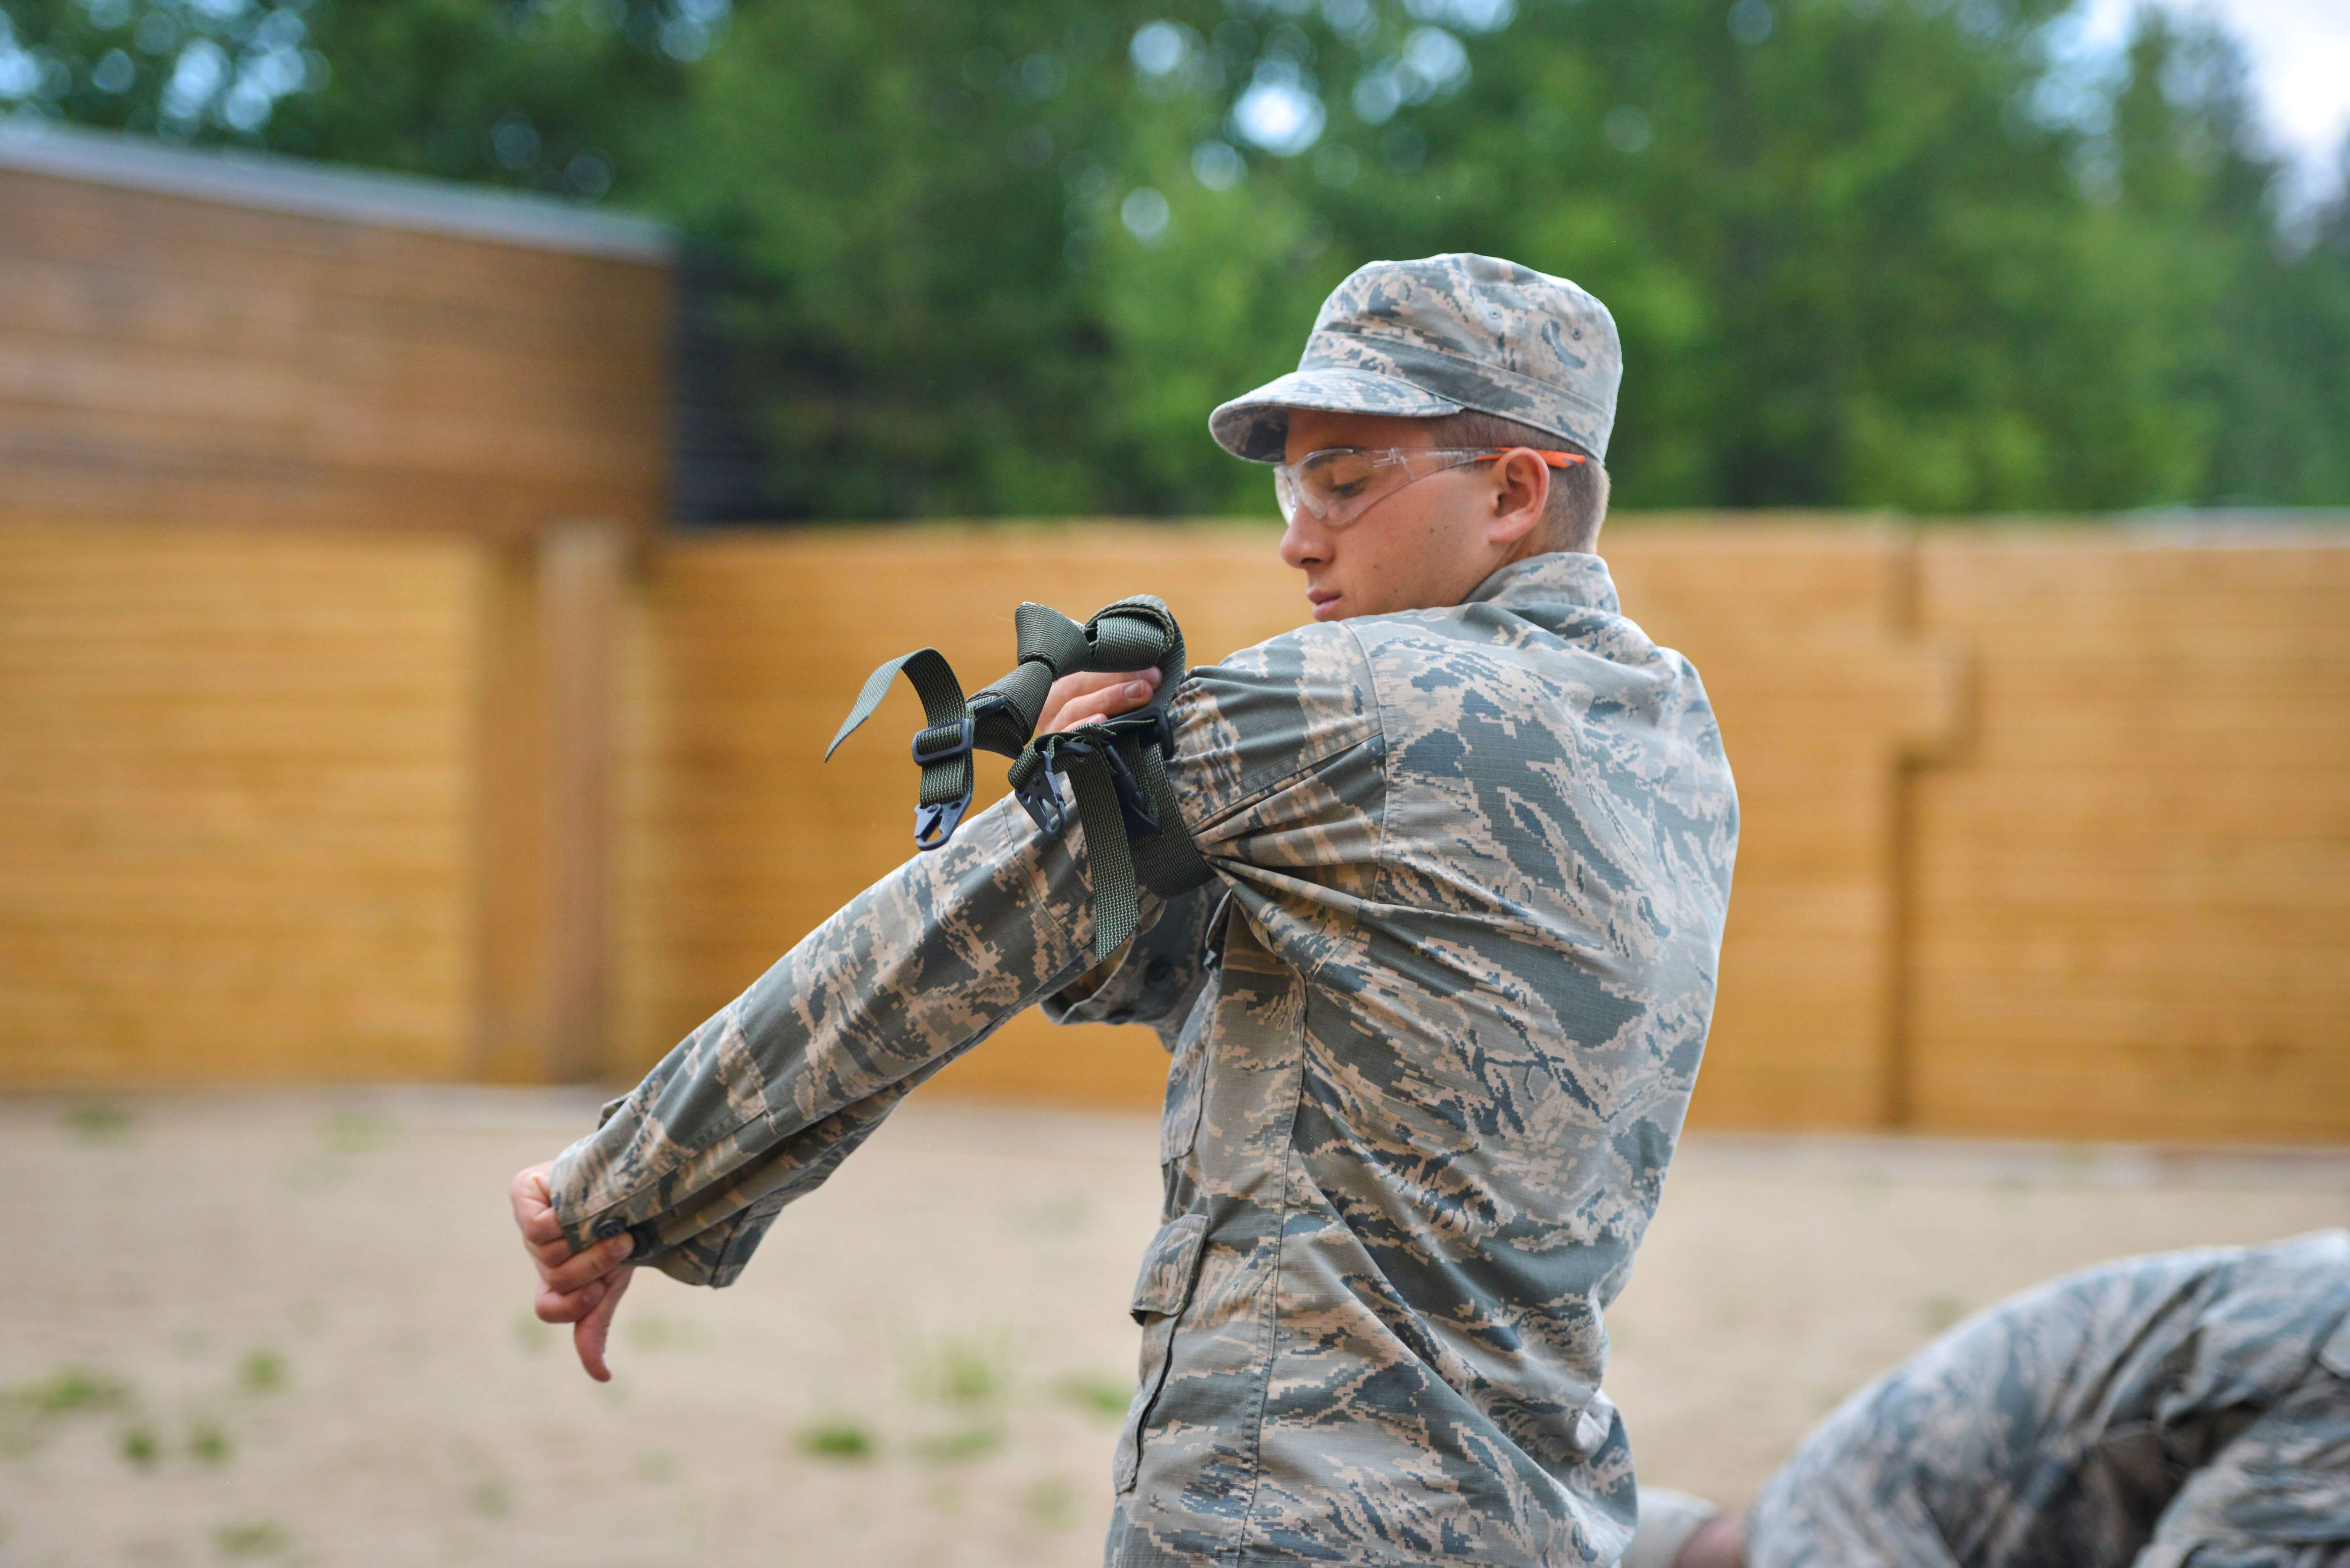 Cadet preparing sling for marksmanship competition